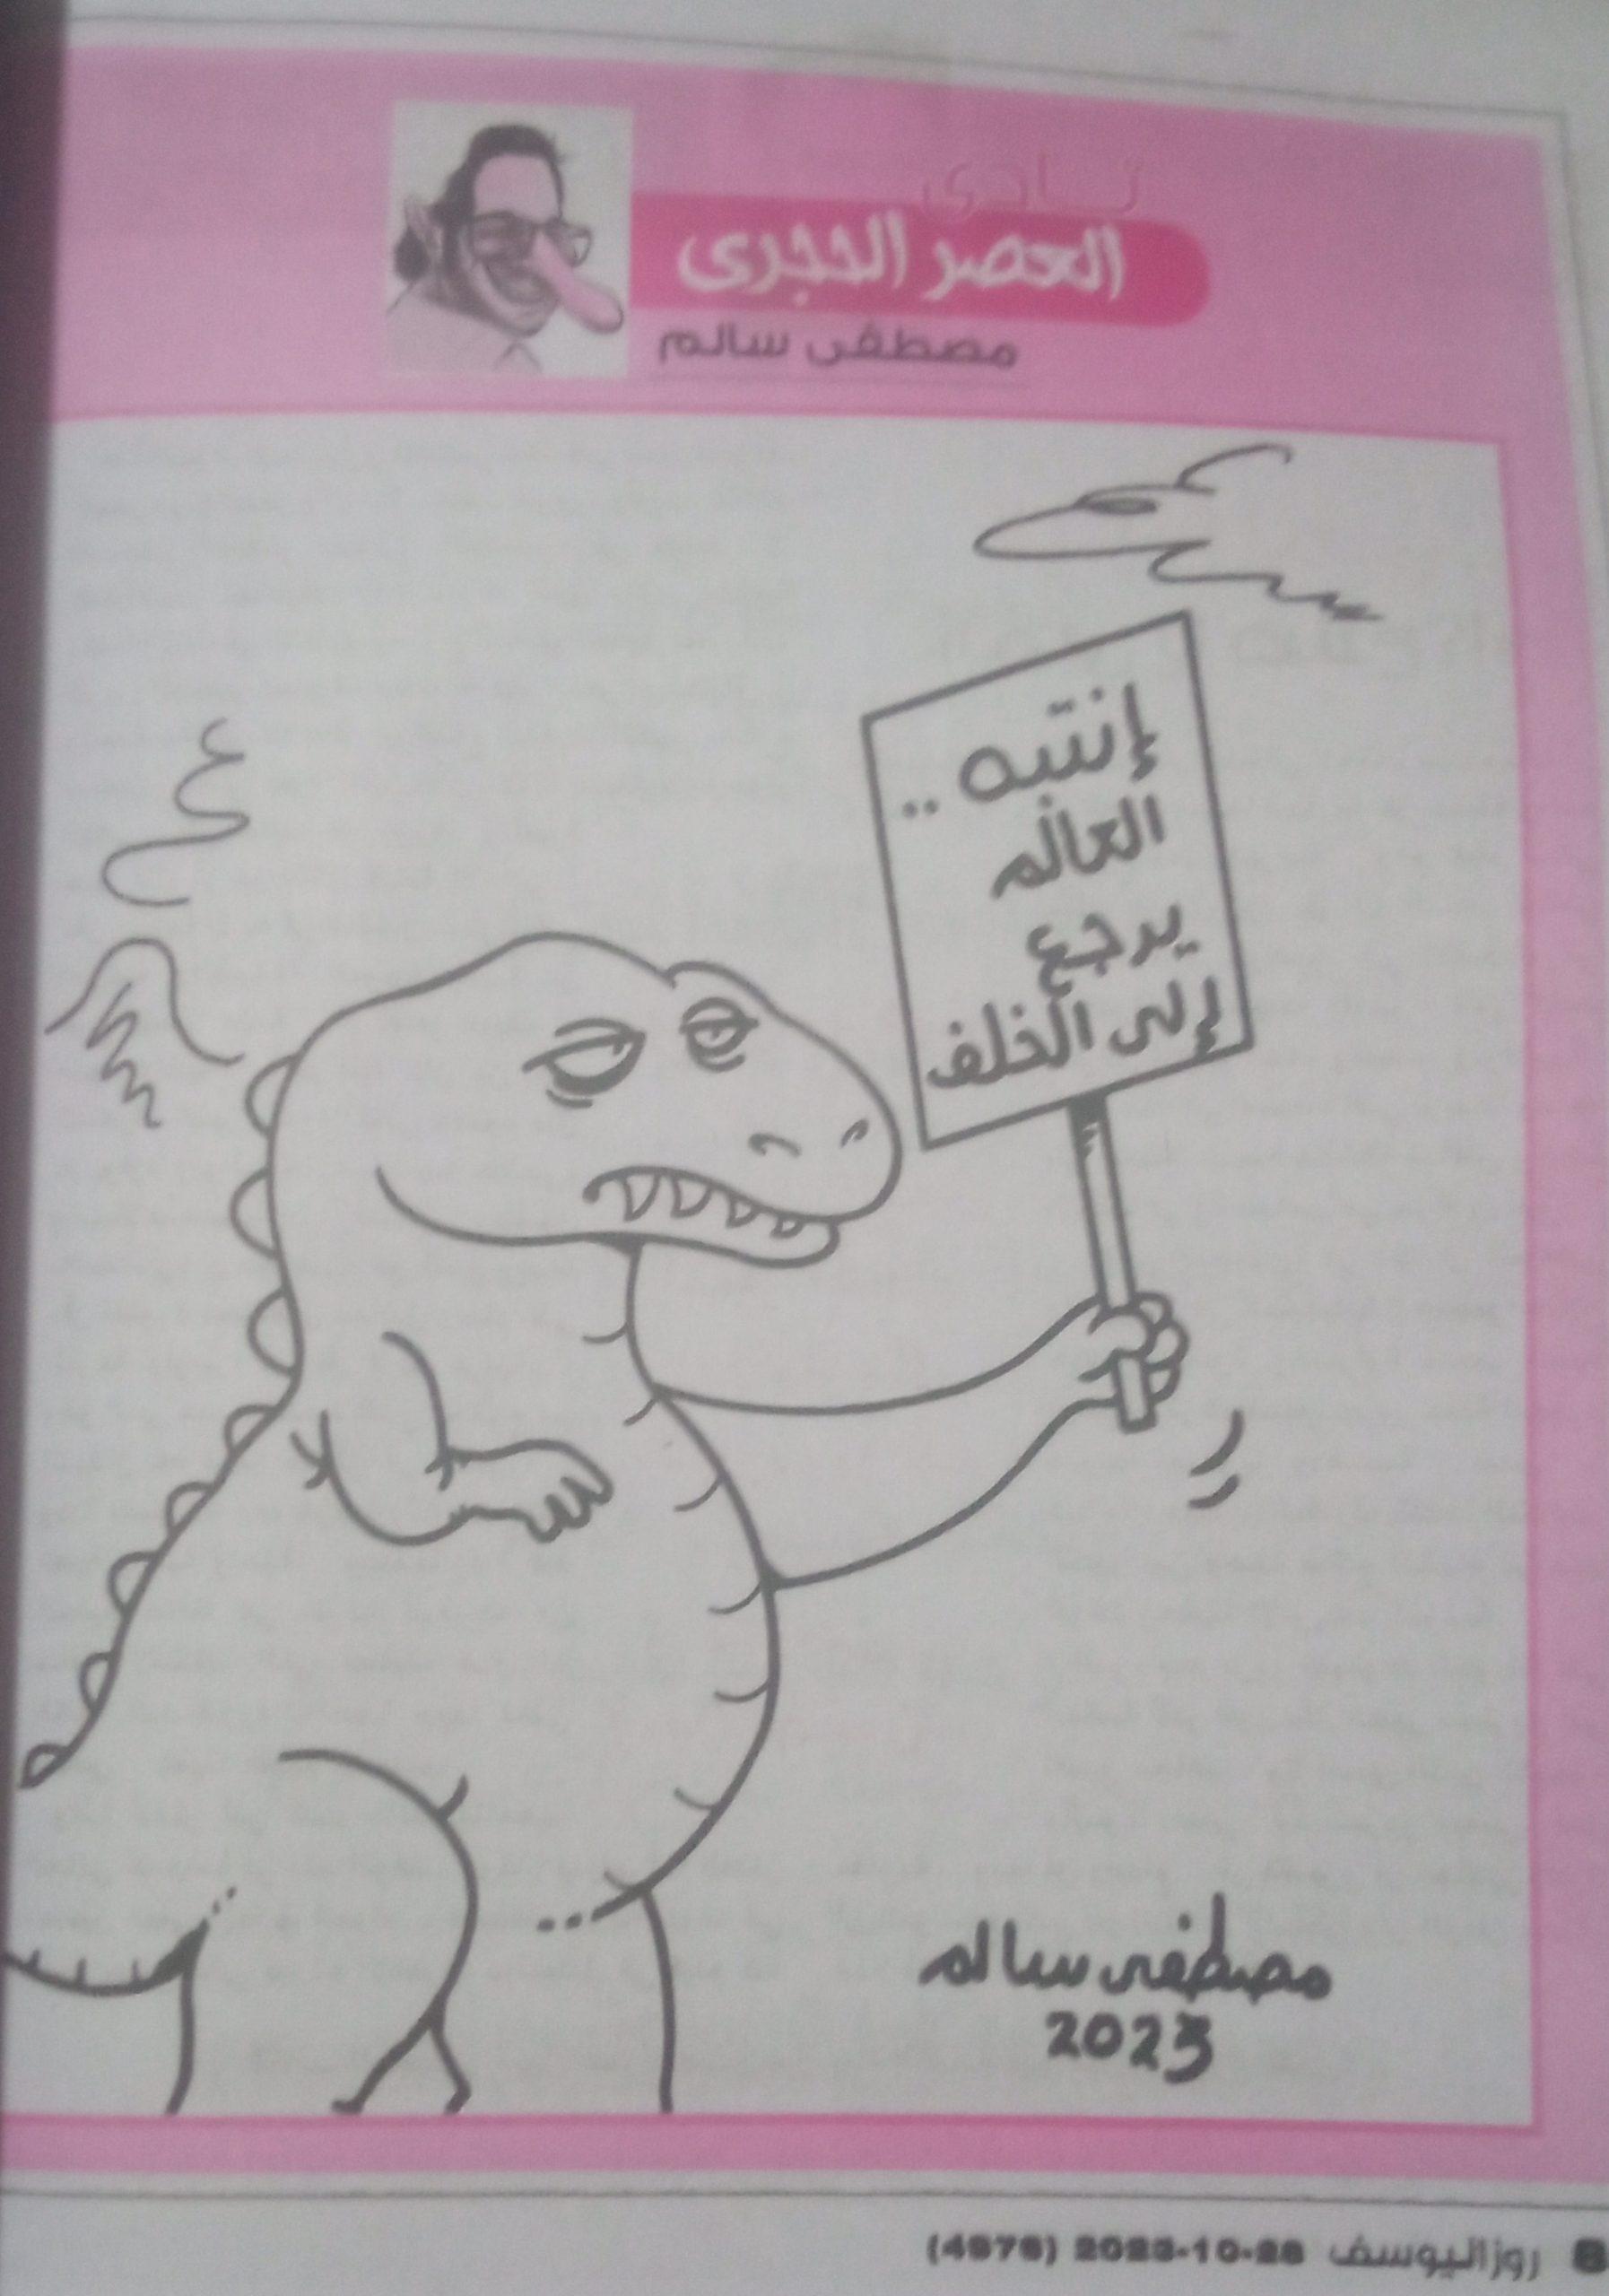 11 - كاريكاتير روز اليوسف، 28 أكتوبر